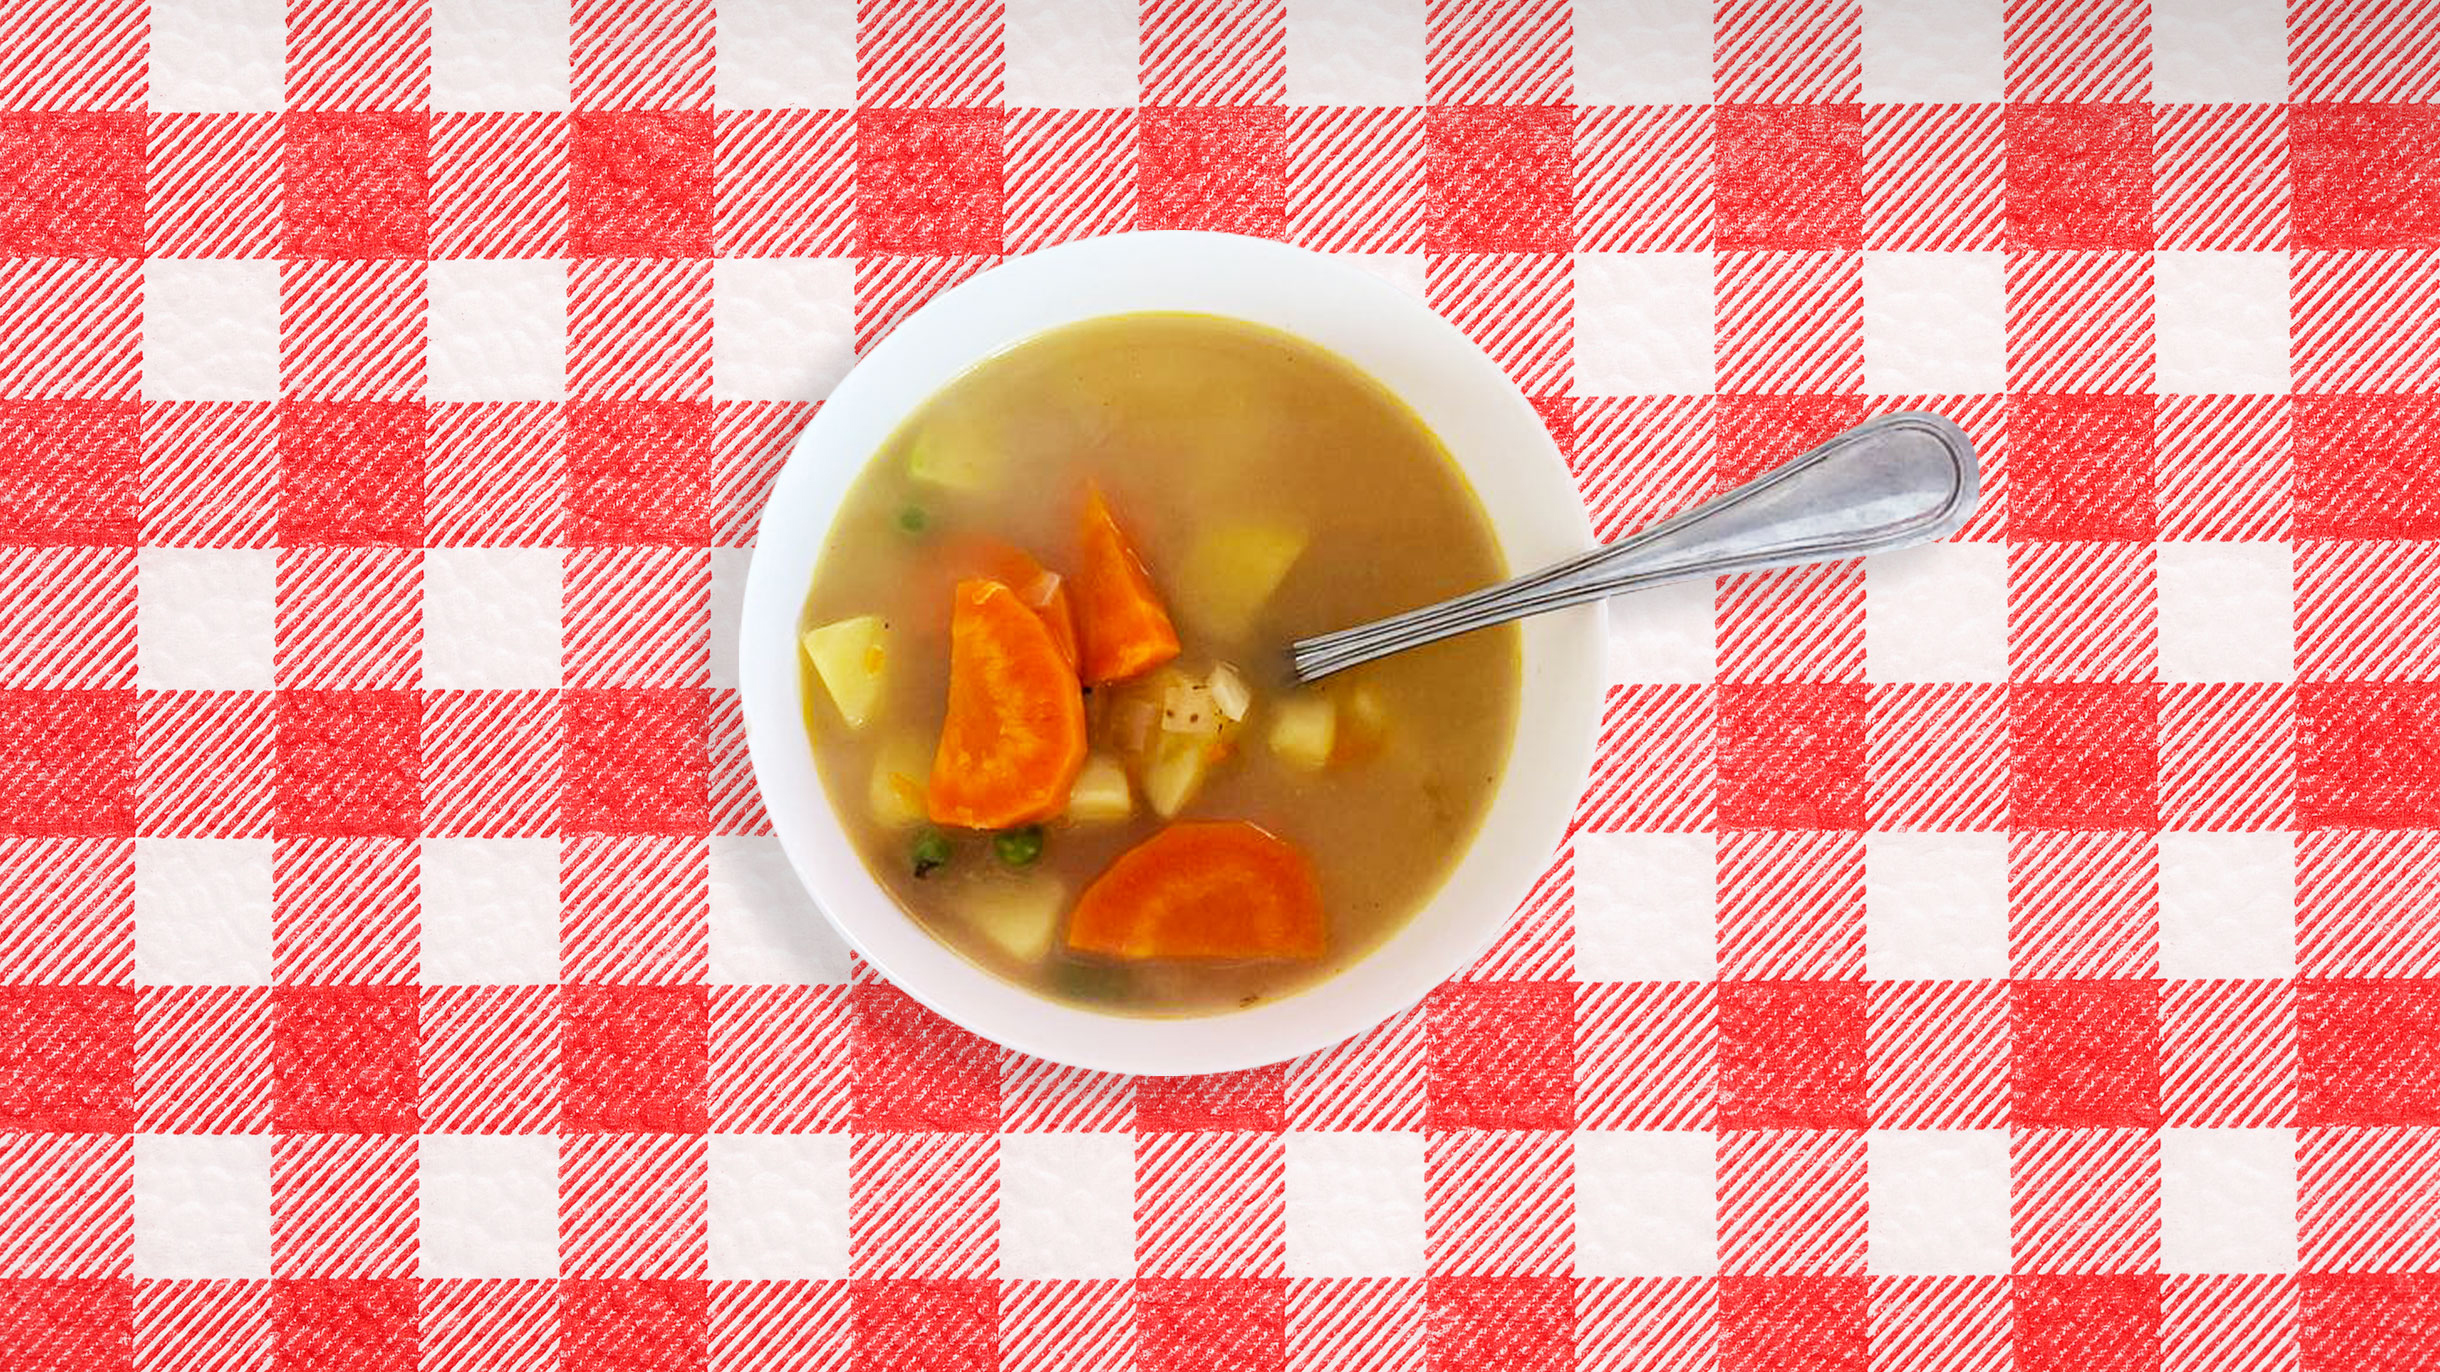 Сырный крем-суп с грибами и курицей